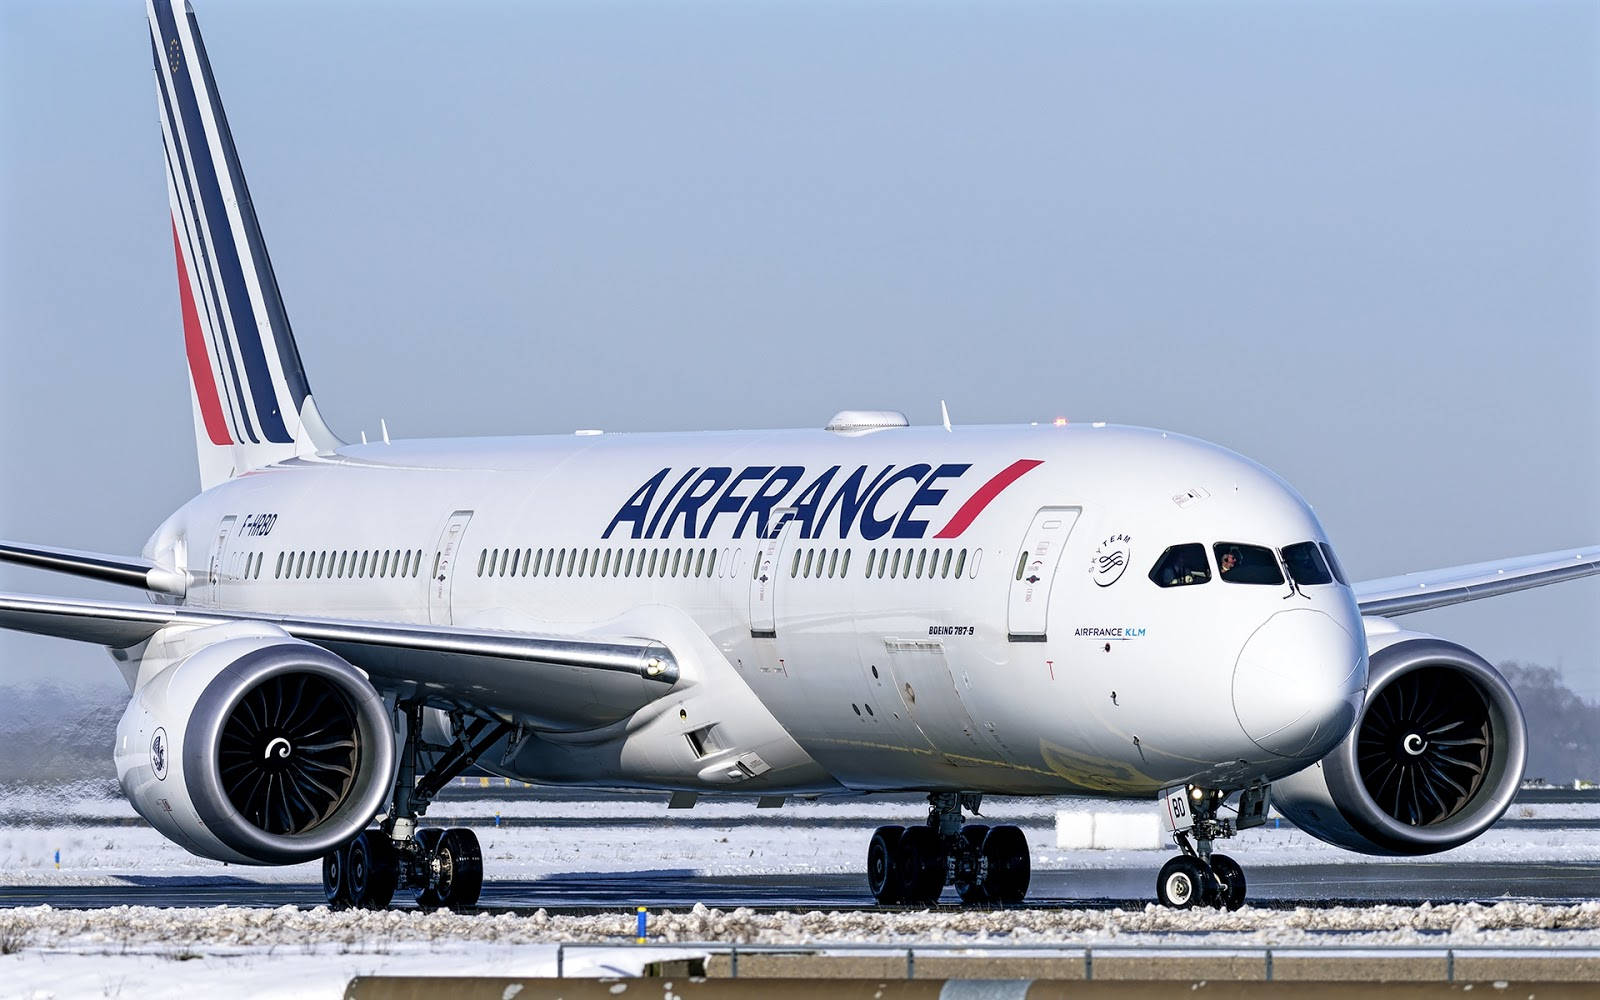 Air France 1600 X 1000 Wallpaper